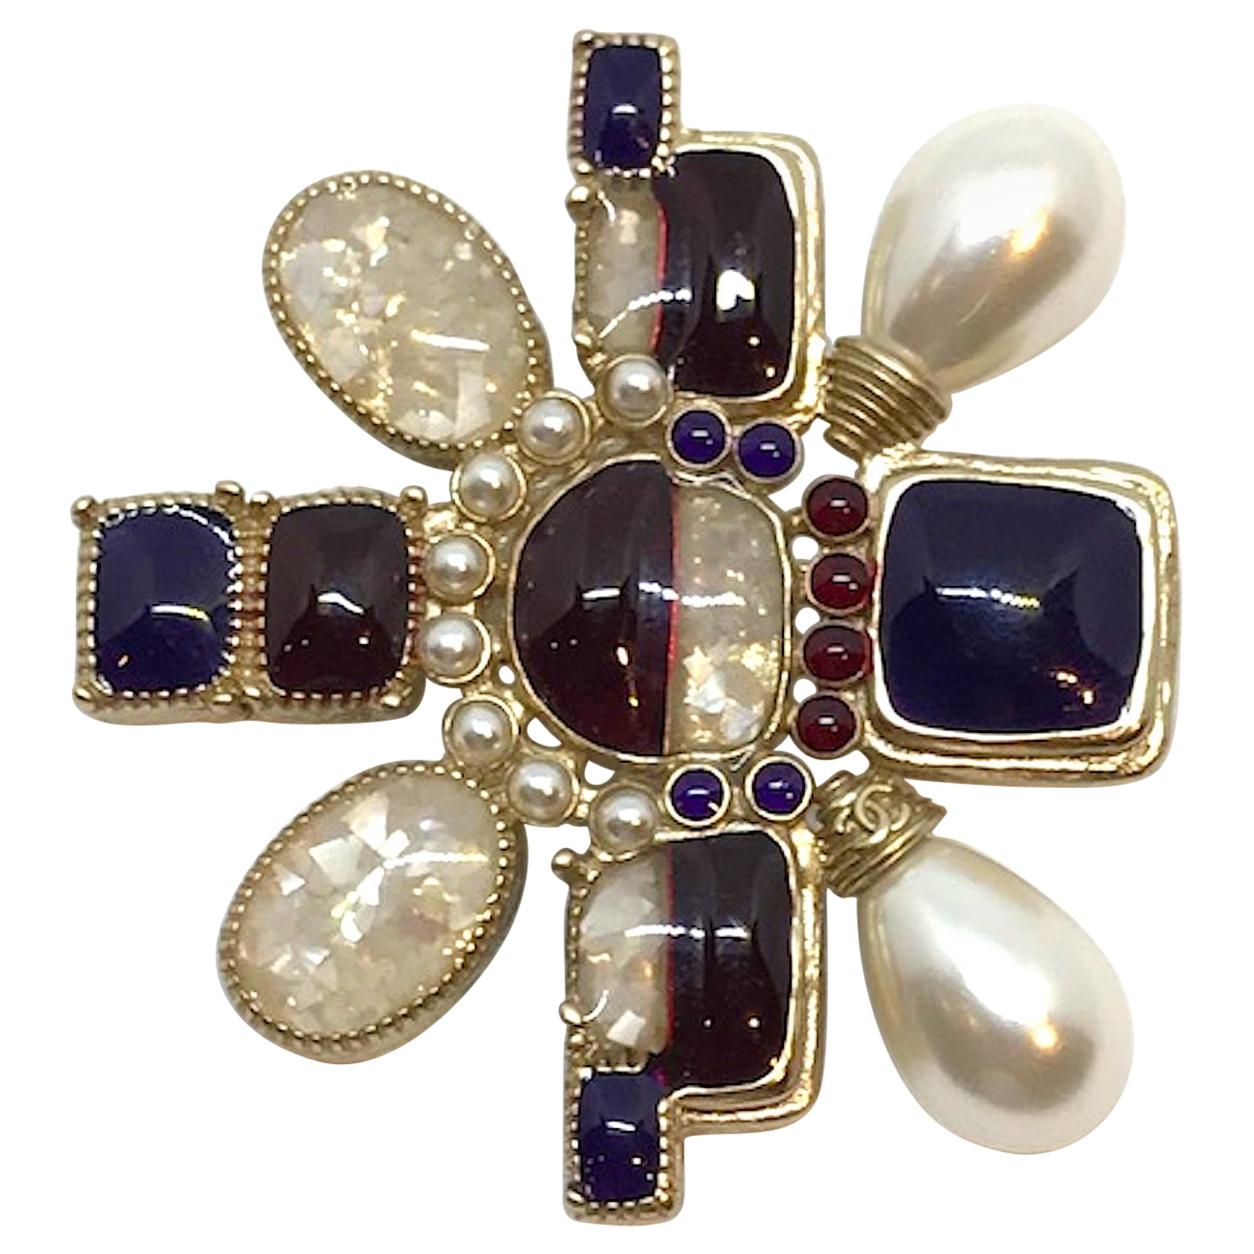 Chanel Asymmetric Medallion Pin, 2016 Collection